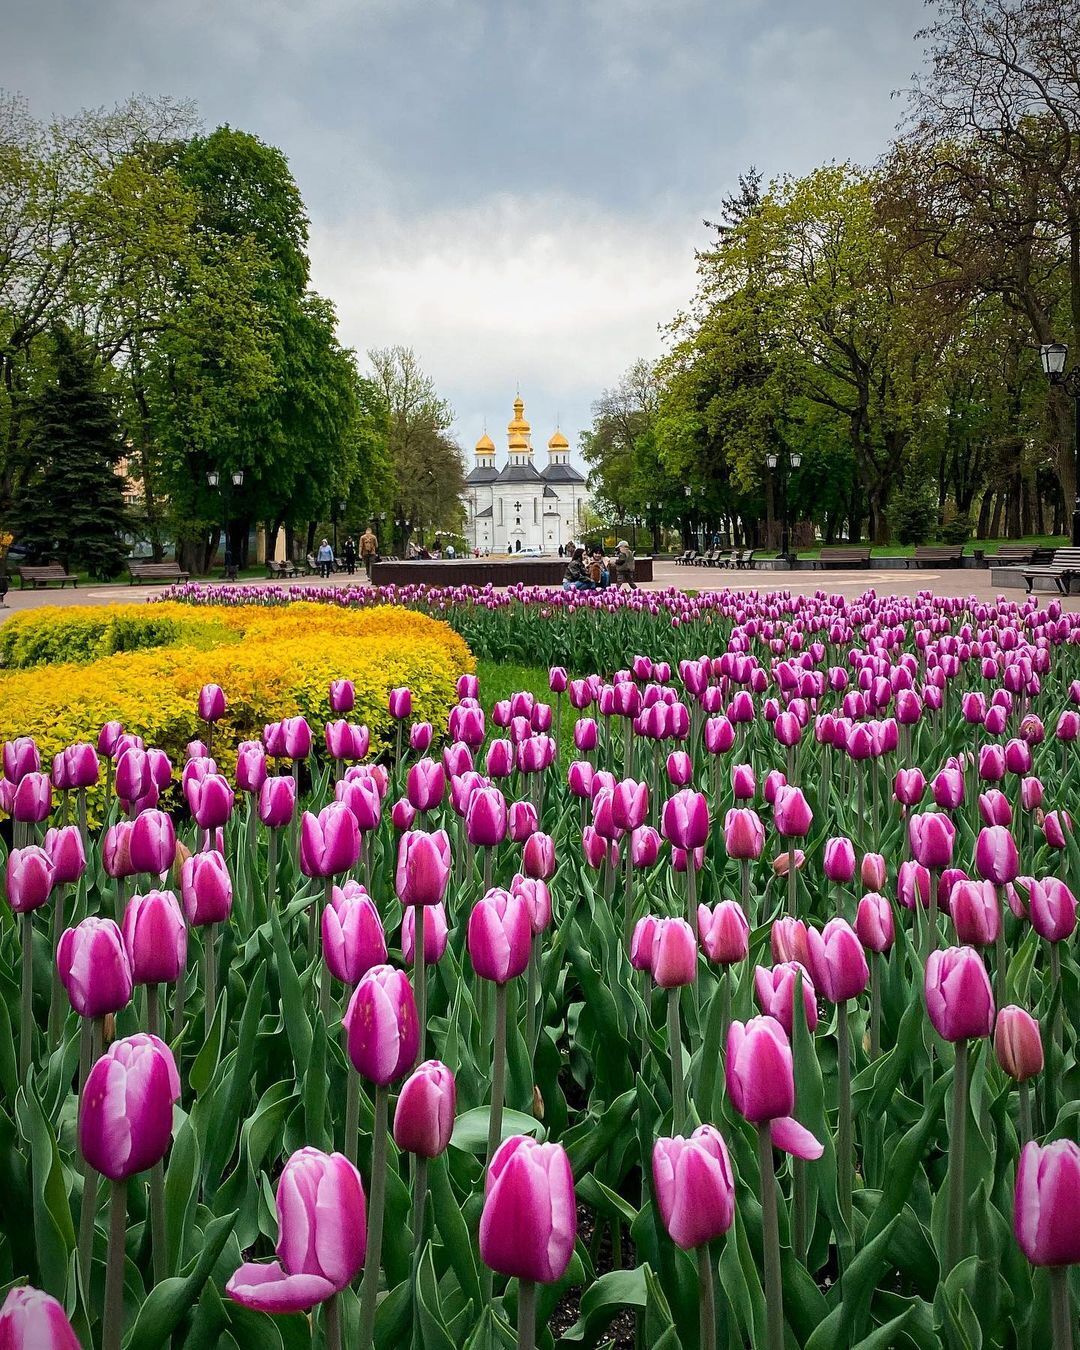 Город Украины, который готовится к включению в список Всемирного наследия ЮНЕСКО. Откройте Чернигов изнутри